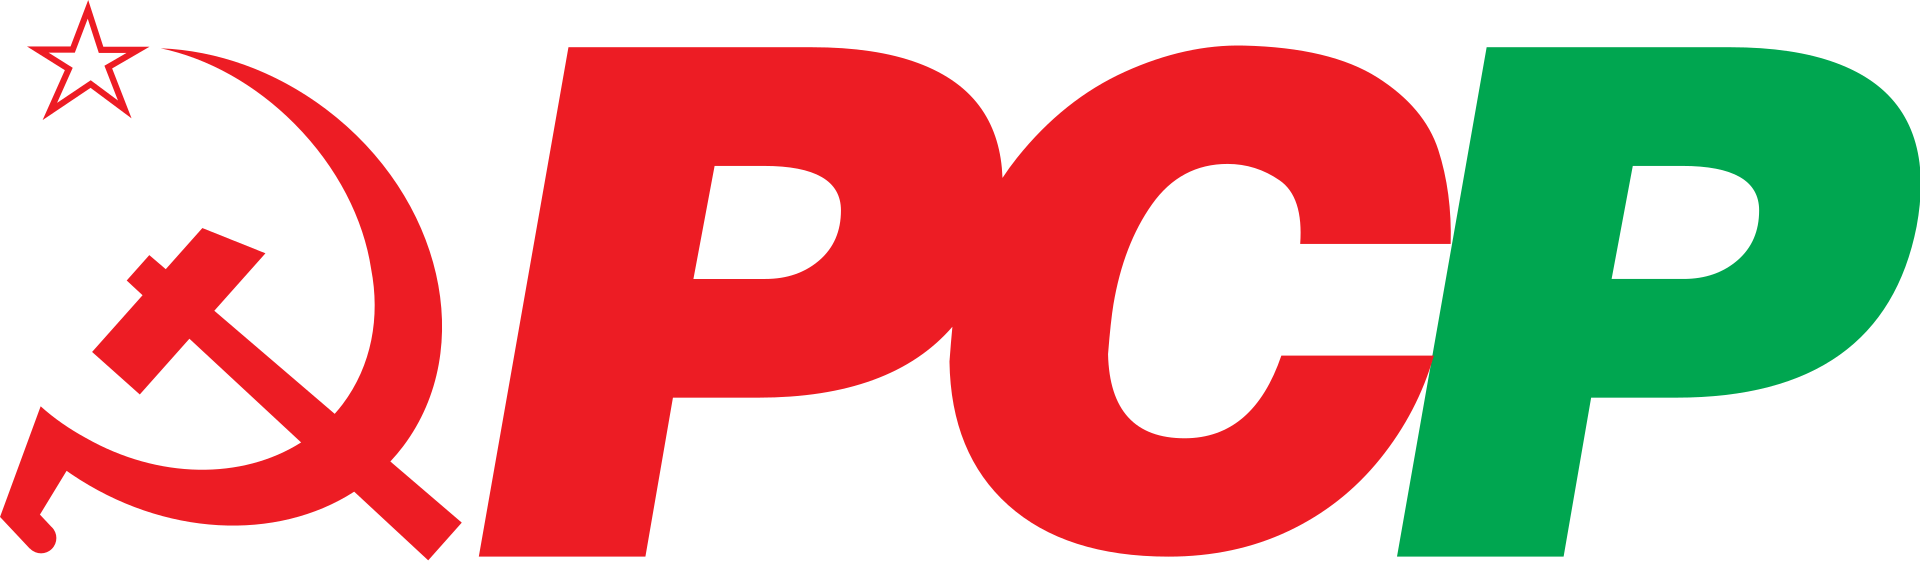 PCP: Partido Comunista Português